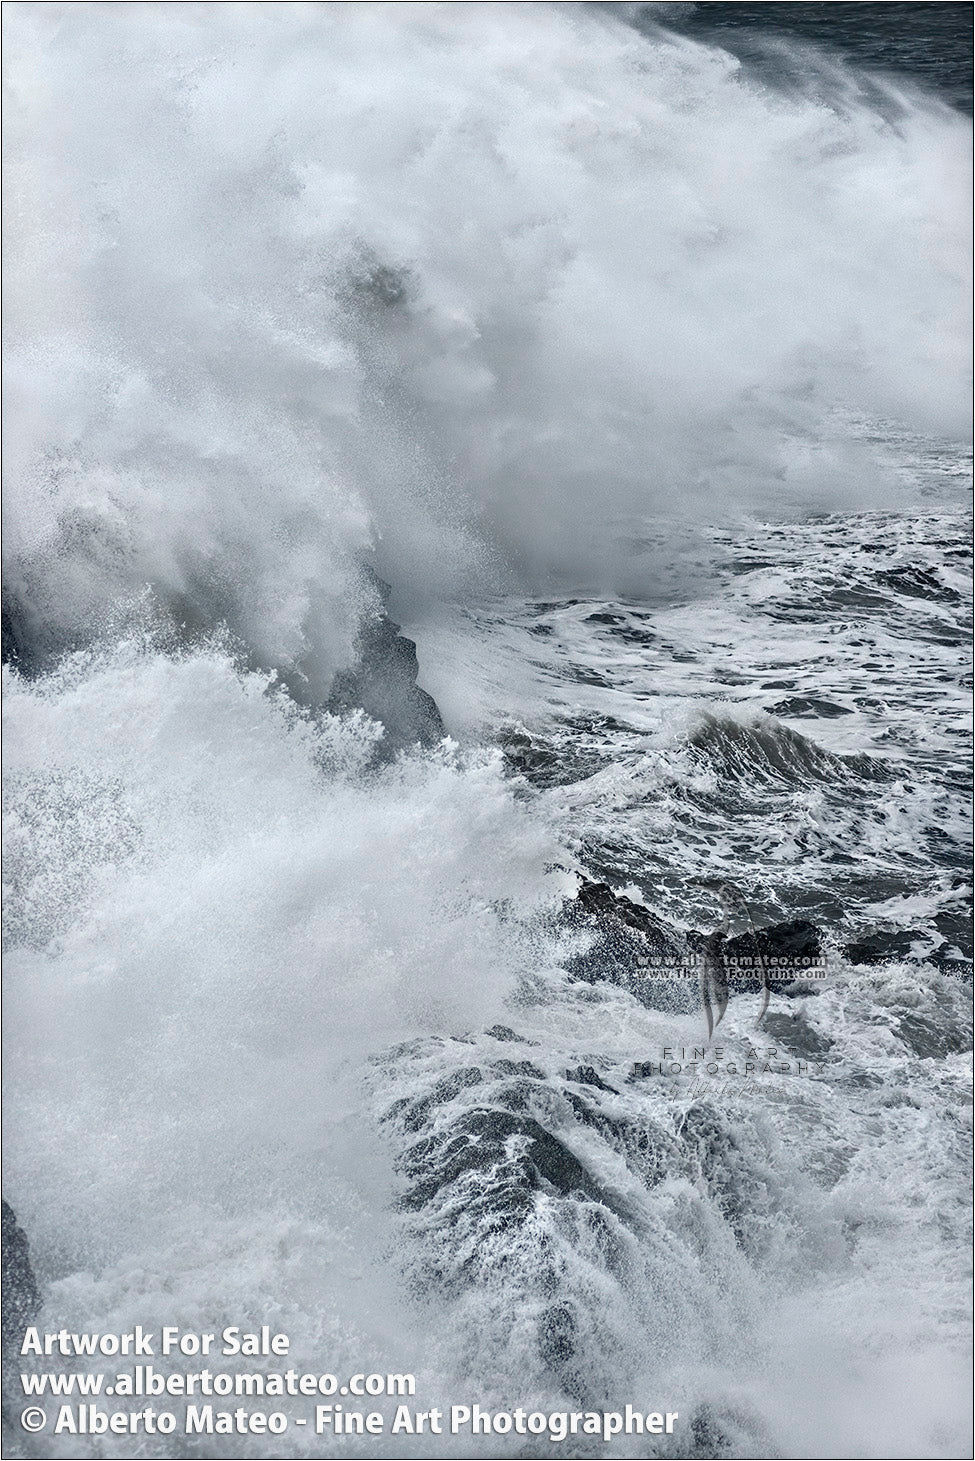 Sea Gale, Breaking Waves, Dyorhaley, Iceland. 4/5